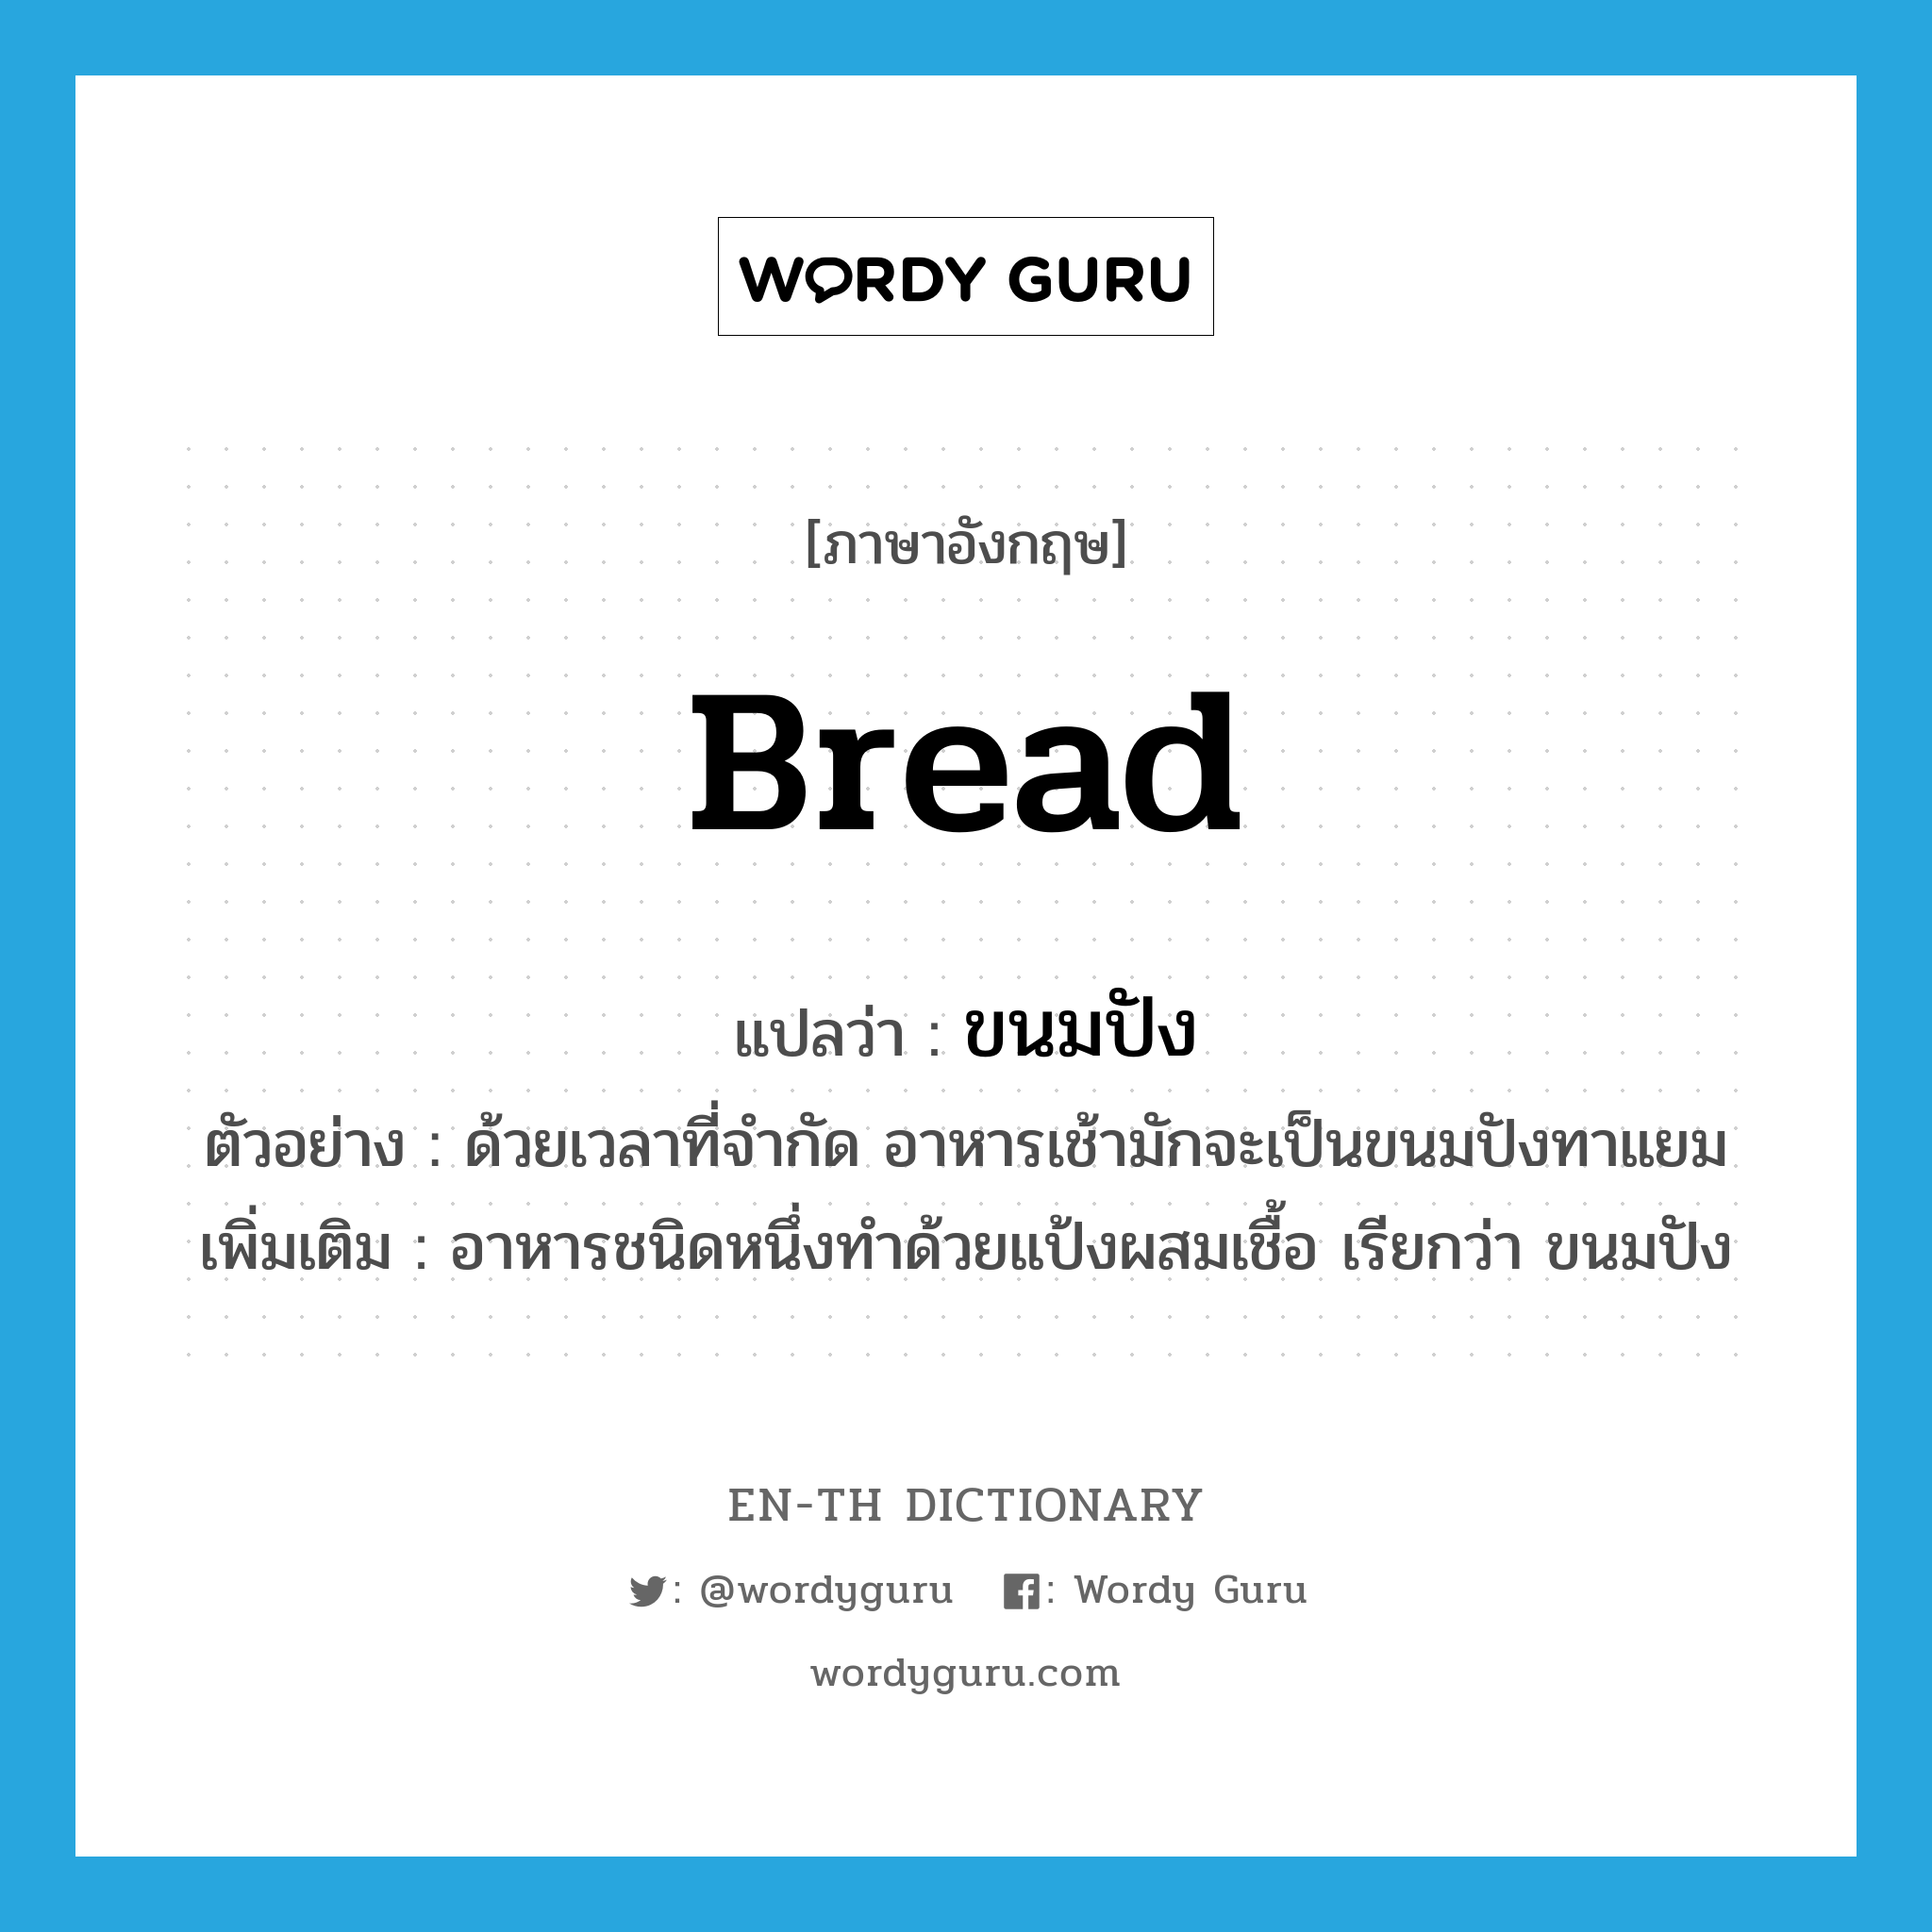 ขนมปัง ภาษาอังกฤษ?, คำศัพท์ภาษาอังกฤษ ขนมปัง แปลว่า bread ประเภท N ตัวอย่าง ด้วยเวลาที่จำกัด อาหารเช้ามักจะเป็นขนมปังทาแยม เพิ่มเติม อาหารชนิดหนึ่งทำด้วยแป้งผสมเชื้อ เรียกว่า ขนมปัง หมวด N